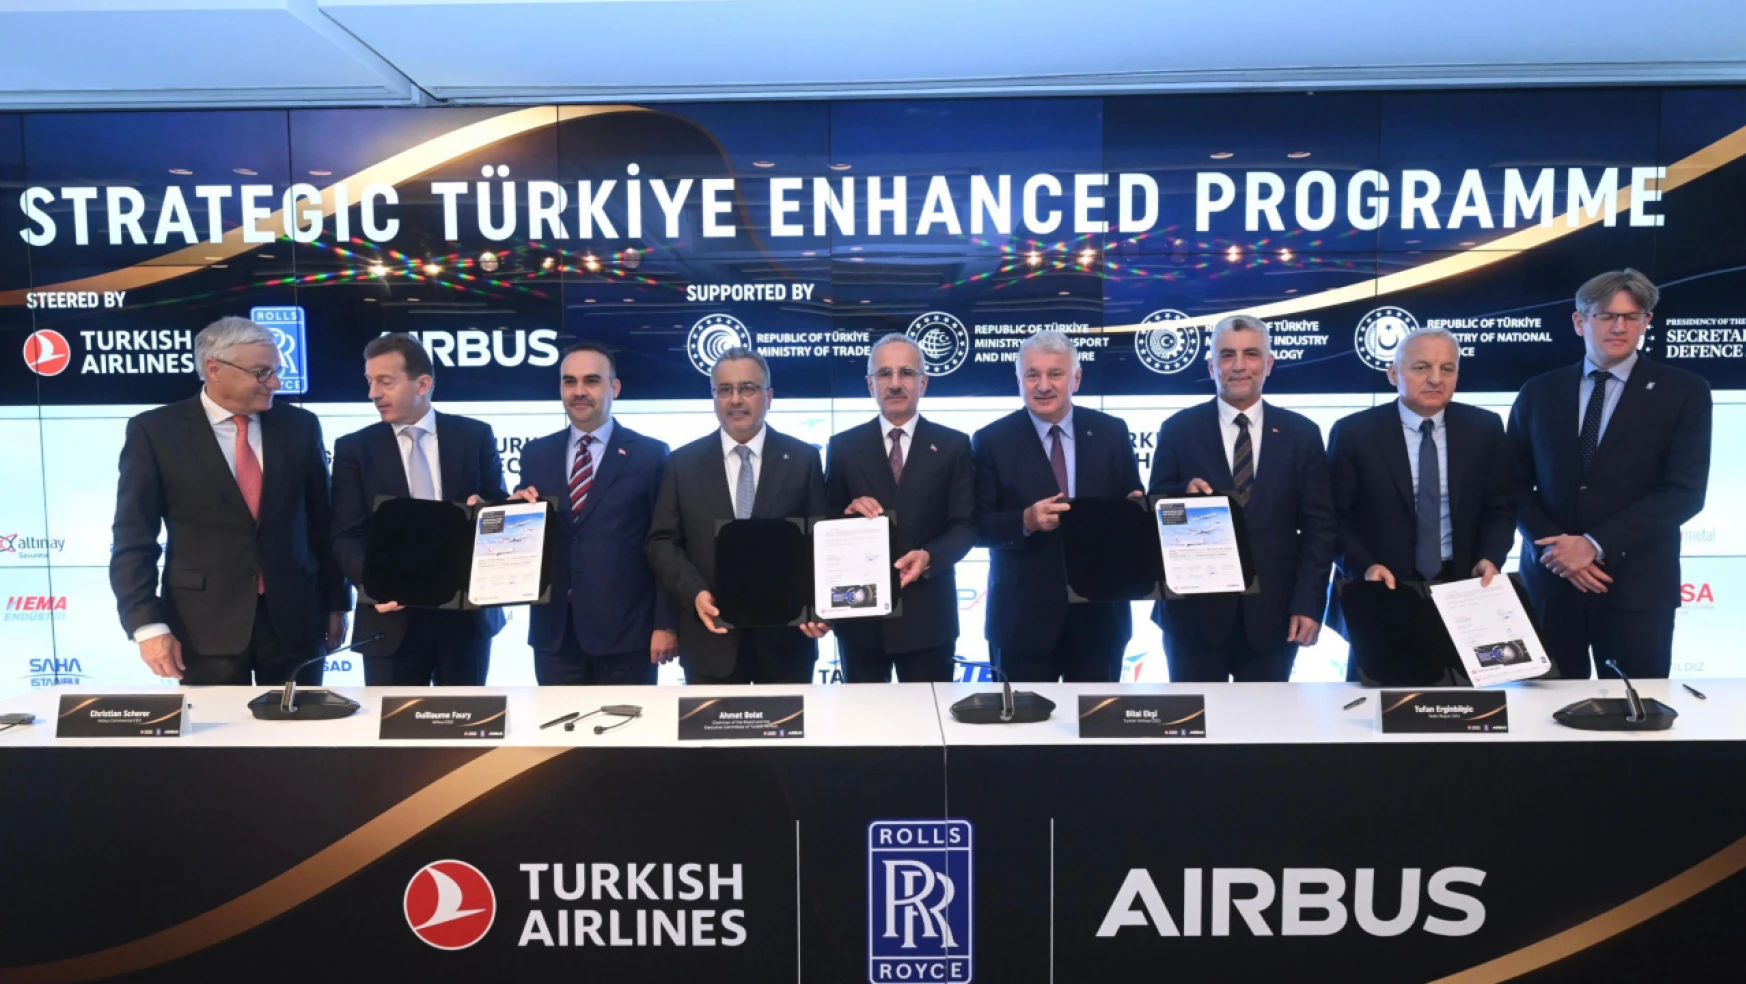 Türk Hava Yolları -Airbus- Rolls-Royce Arasında Tarihi İşbirliği